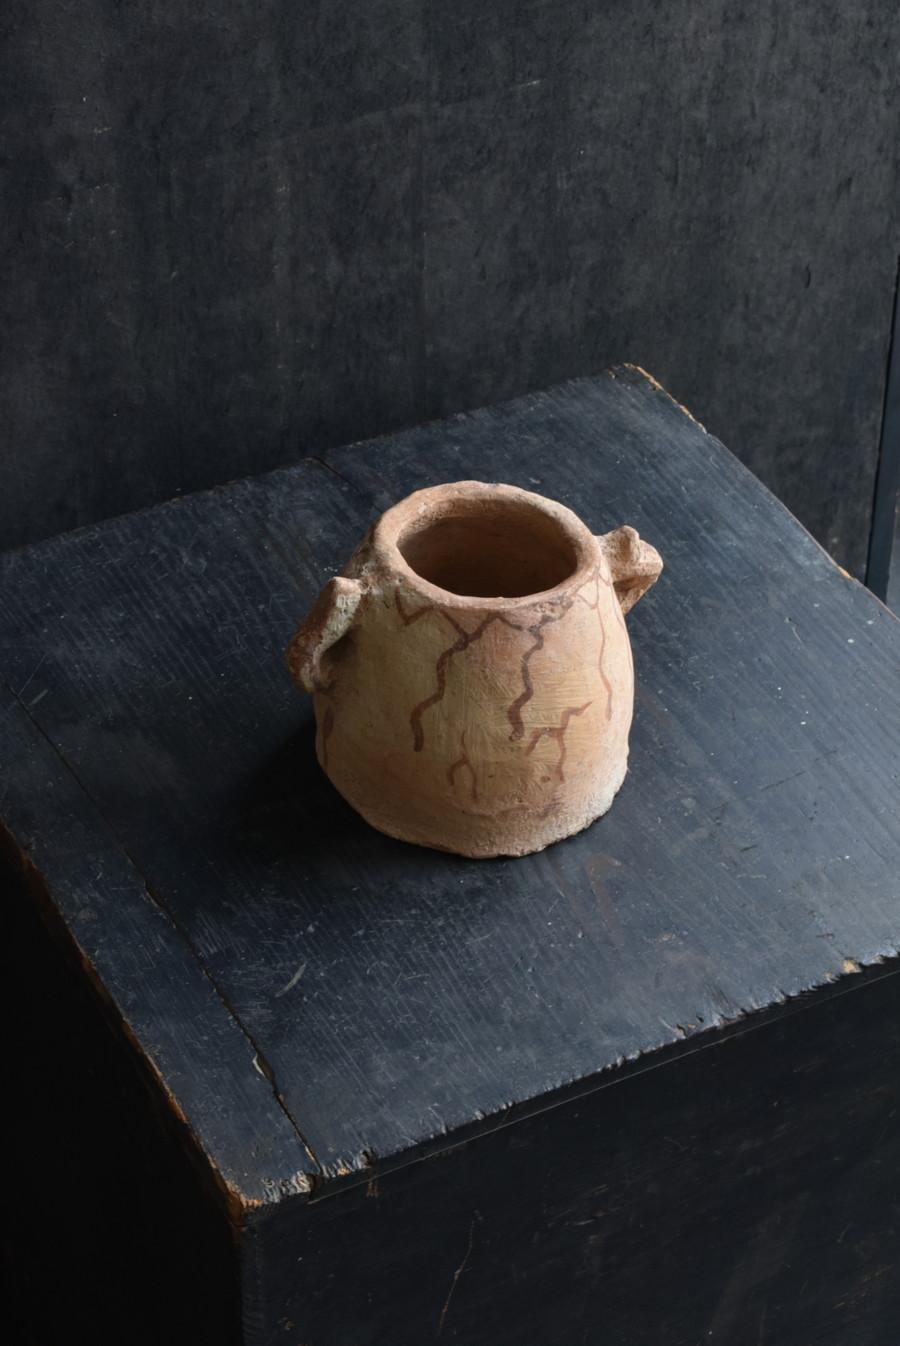 Il s'agit d'une jarre ancienne en poterie marocaine qui appartenait à un collectionneur de poterie japonais.
La poterie non vernissée existe également au Maroc.
Il s'agit probablement d'une excavation.
Ce motif est caractéristique de la poterie